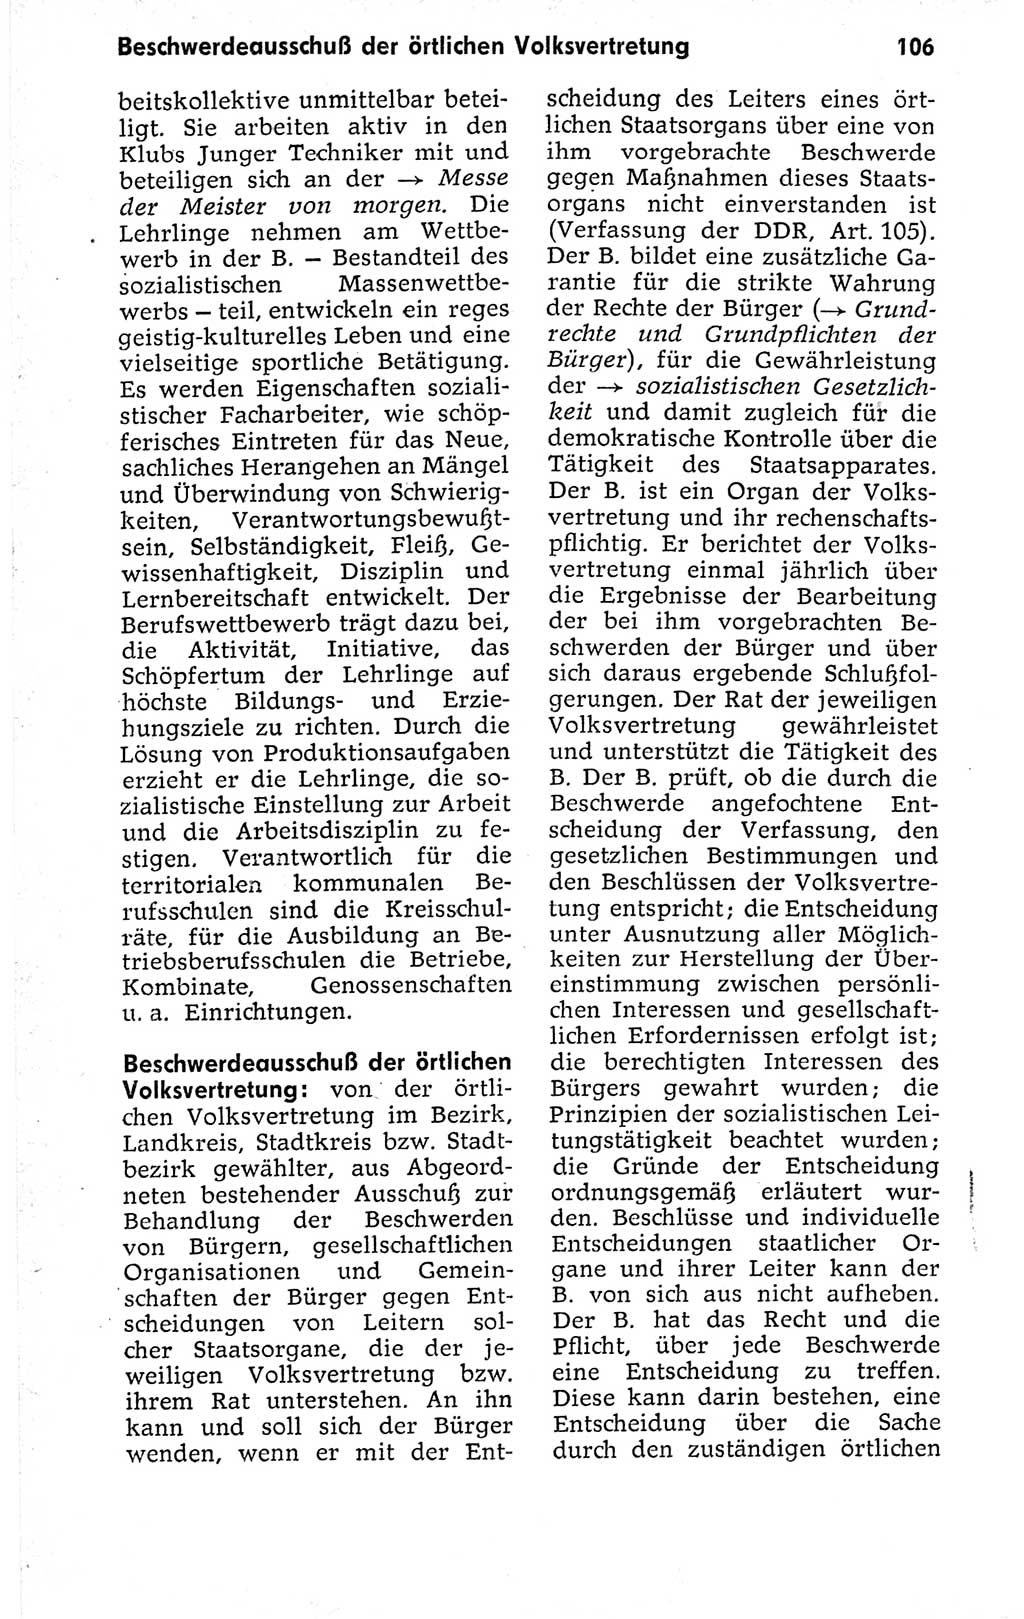 Kleines politisches Wörterbuch [Deutsche Demokratische Republik (DDR)] 1973, Seite 106 (Kl. pol. Wb. DDR 1973, S. 106)